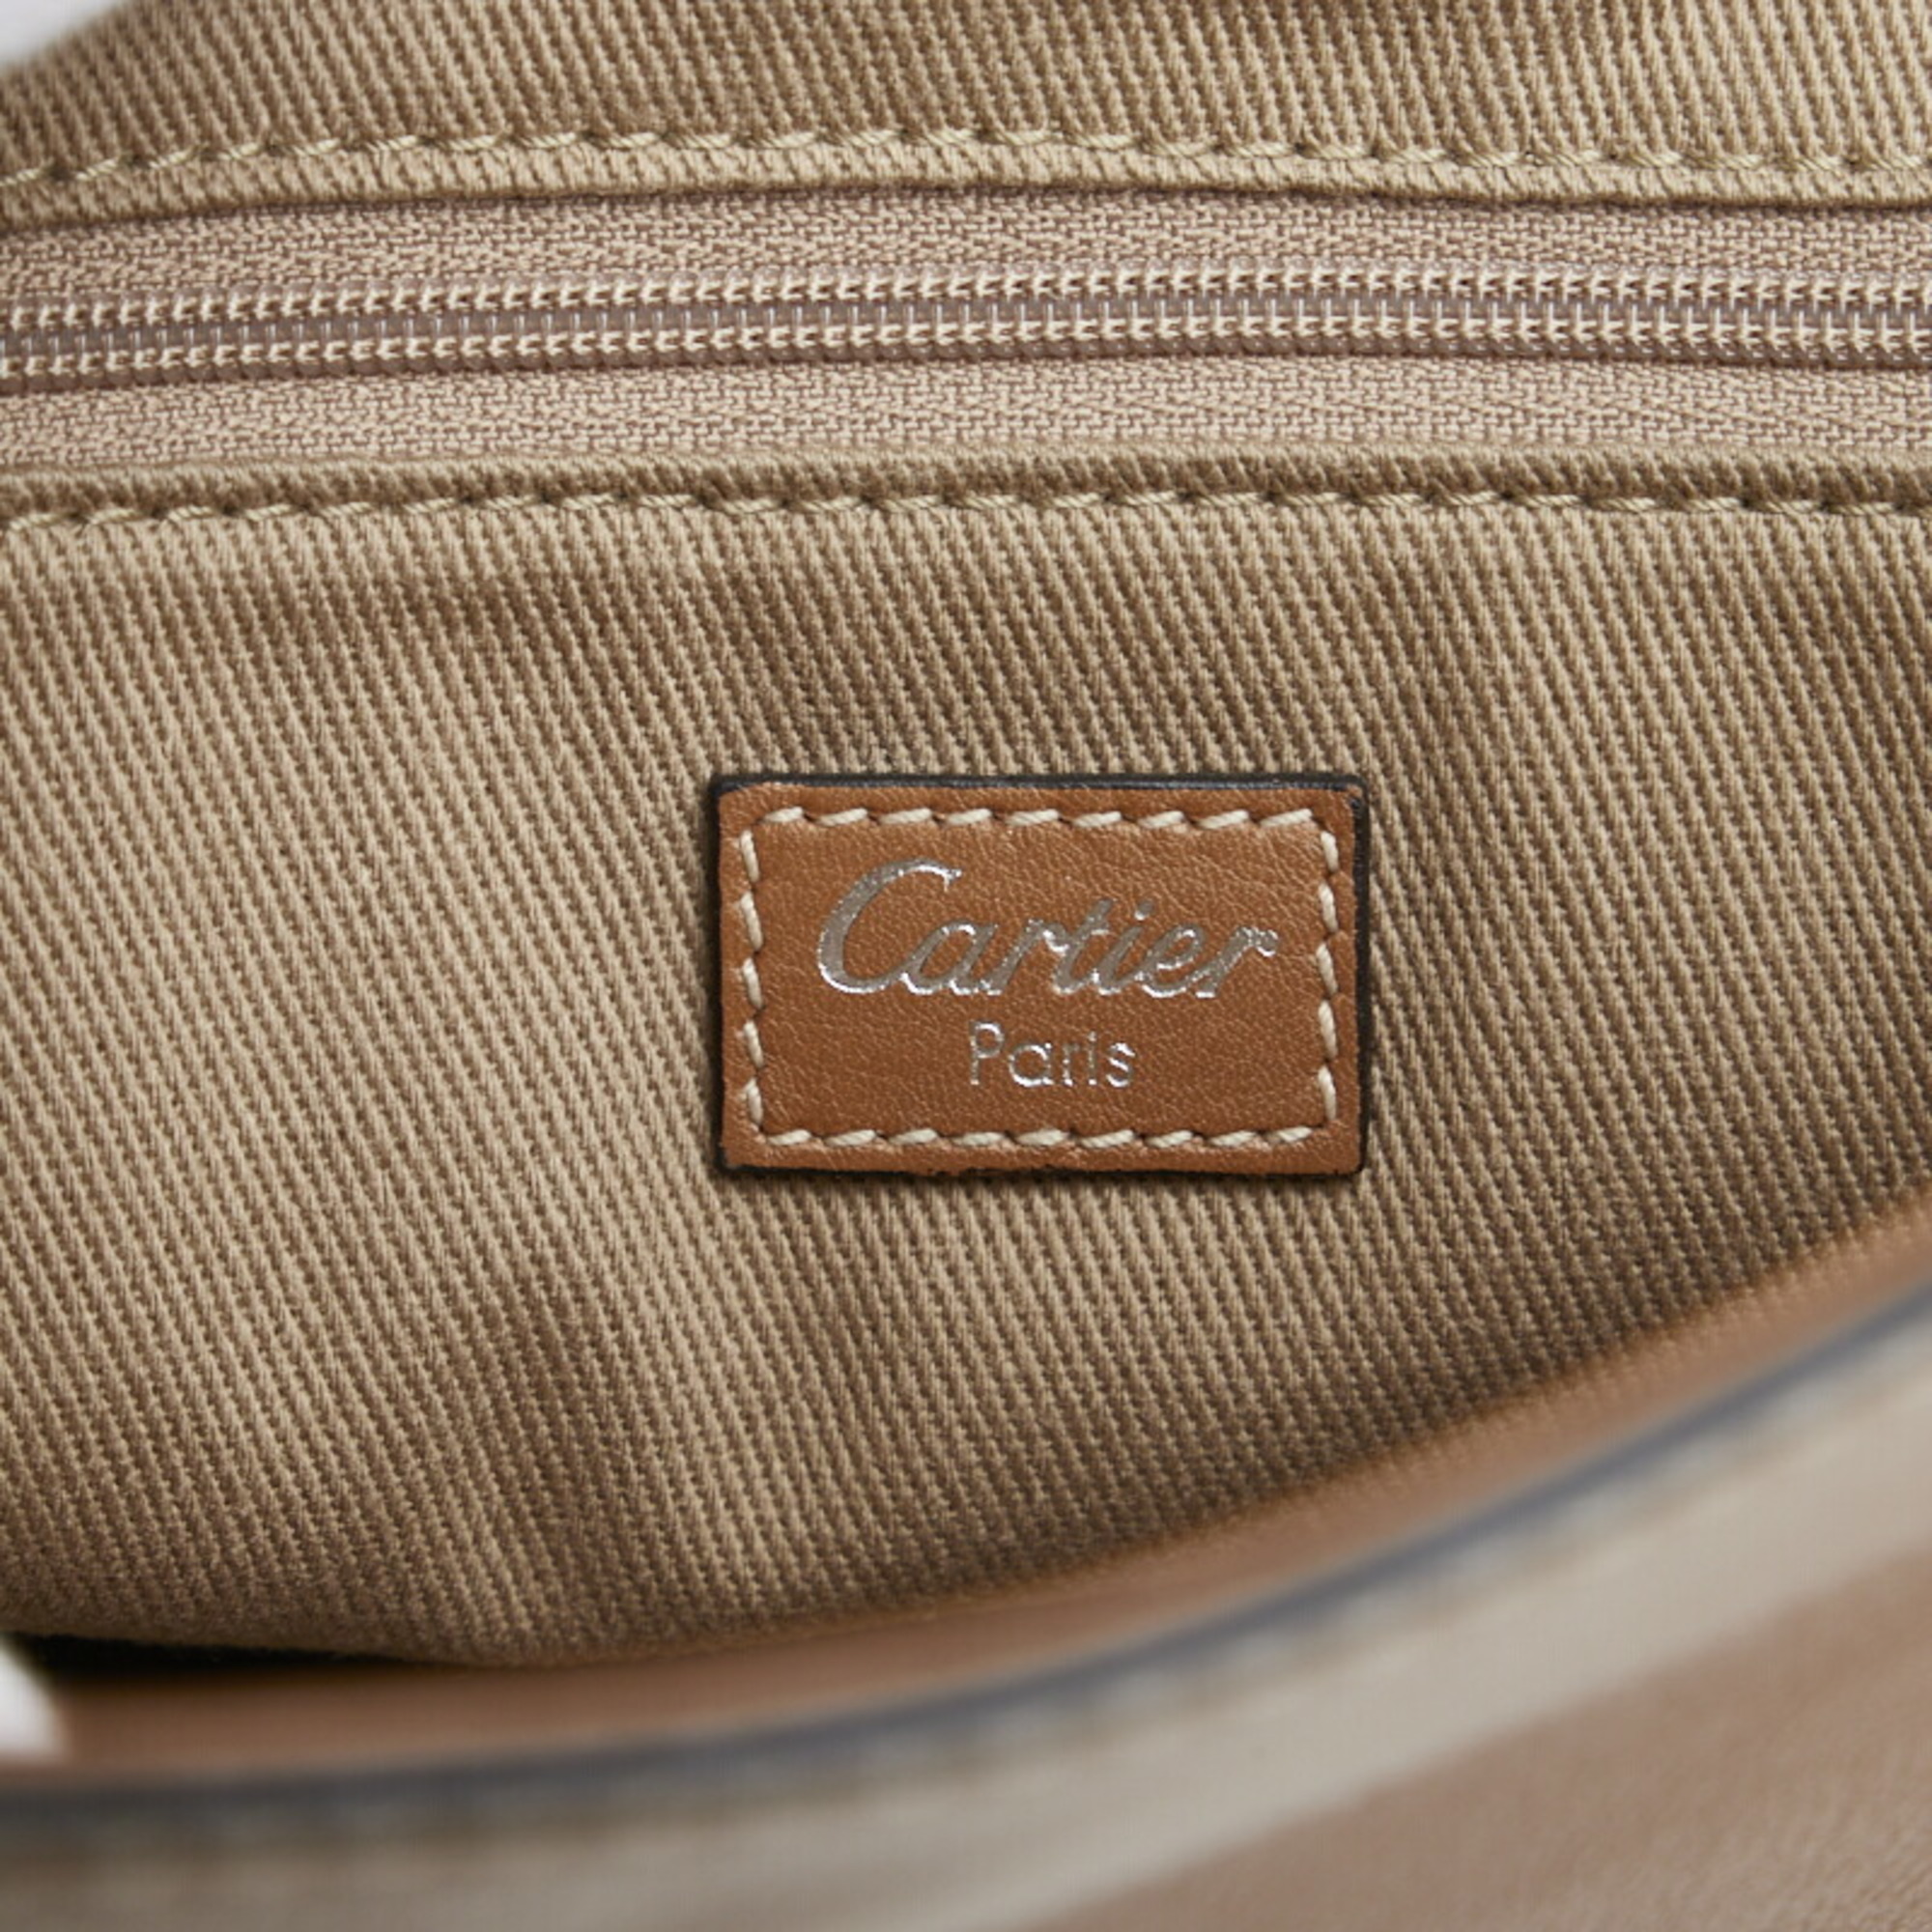 Cartier punching shoulder bag handbag brown leather men CARTIER